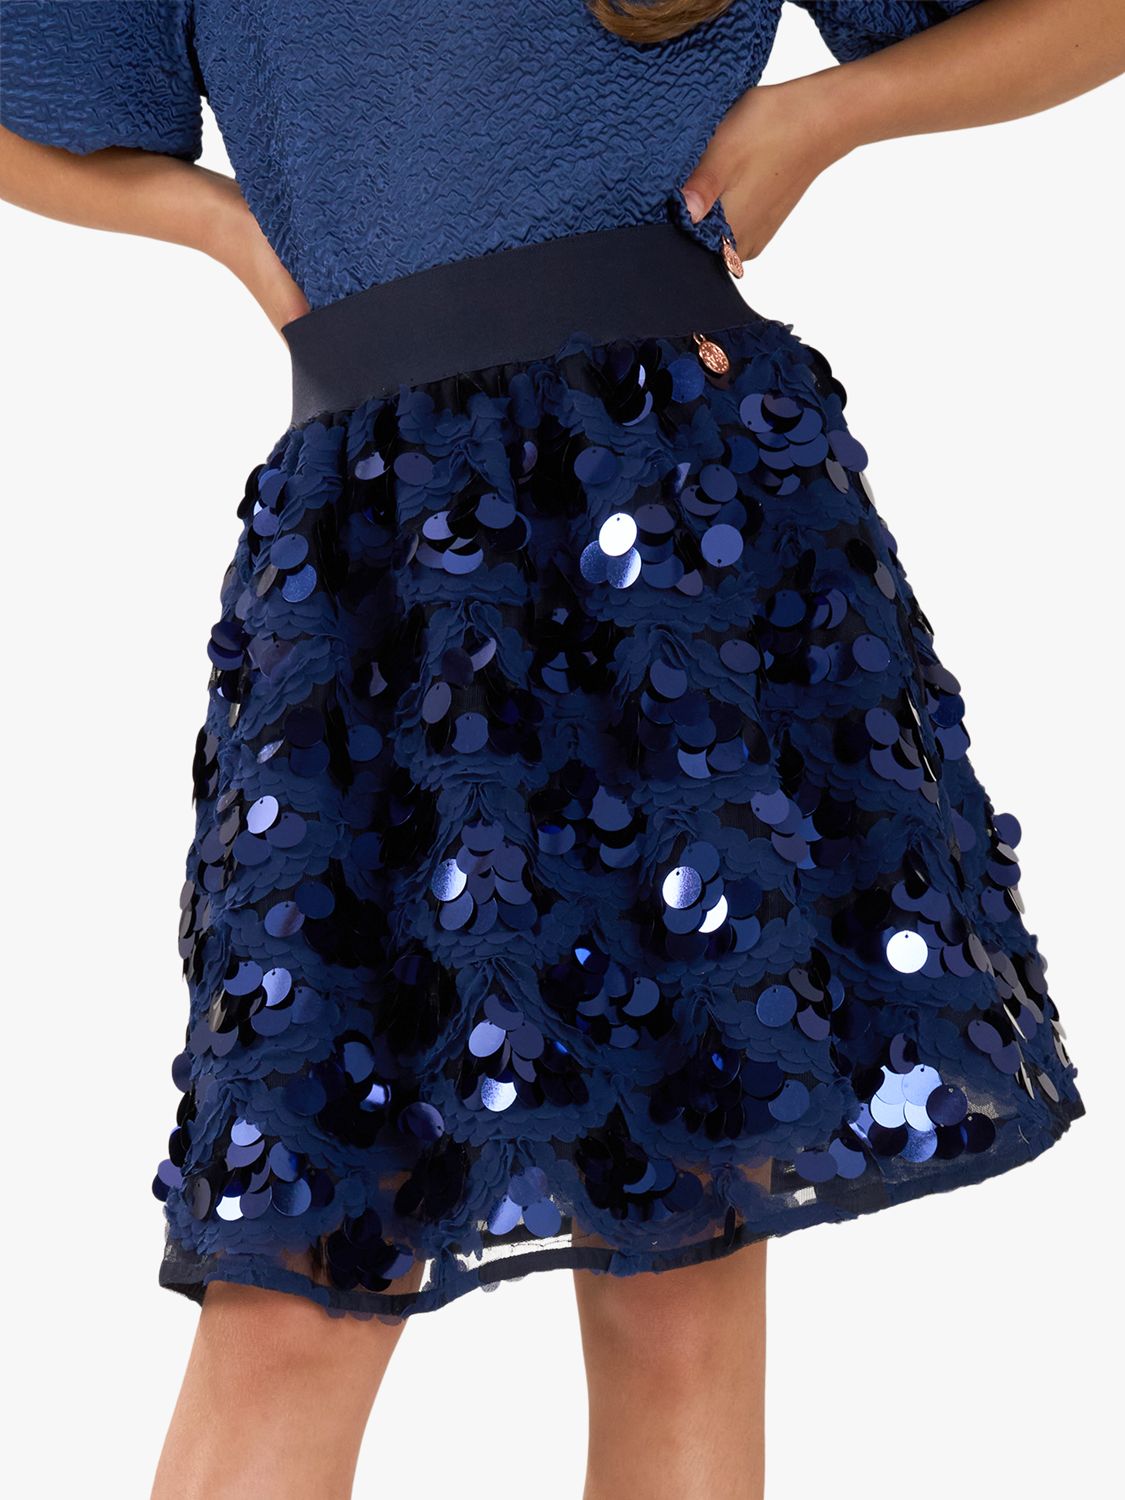 Angel & Rocket Kids' Ellie Sequin Skirt, Navy, 8 years